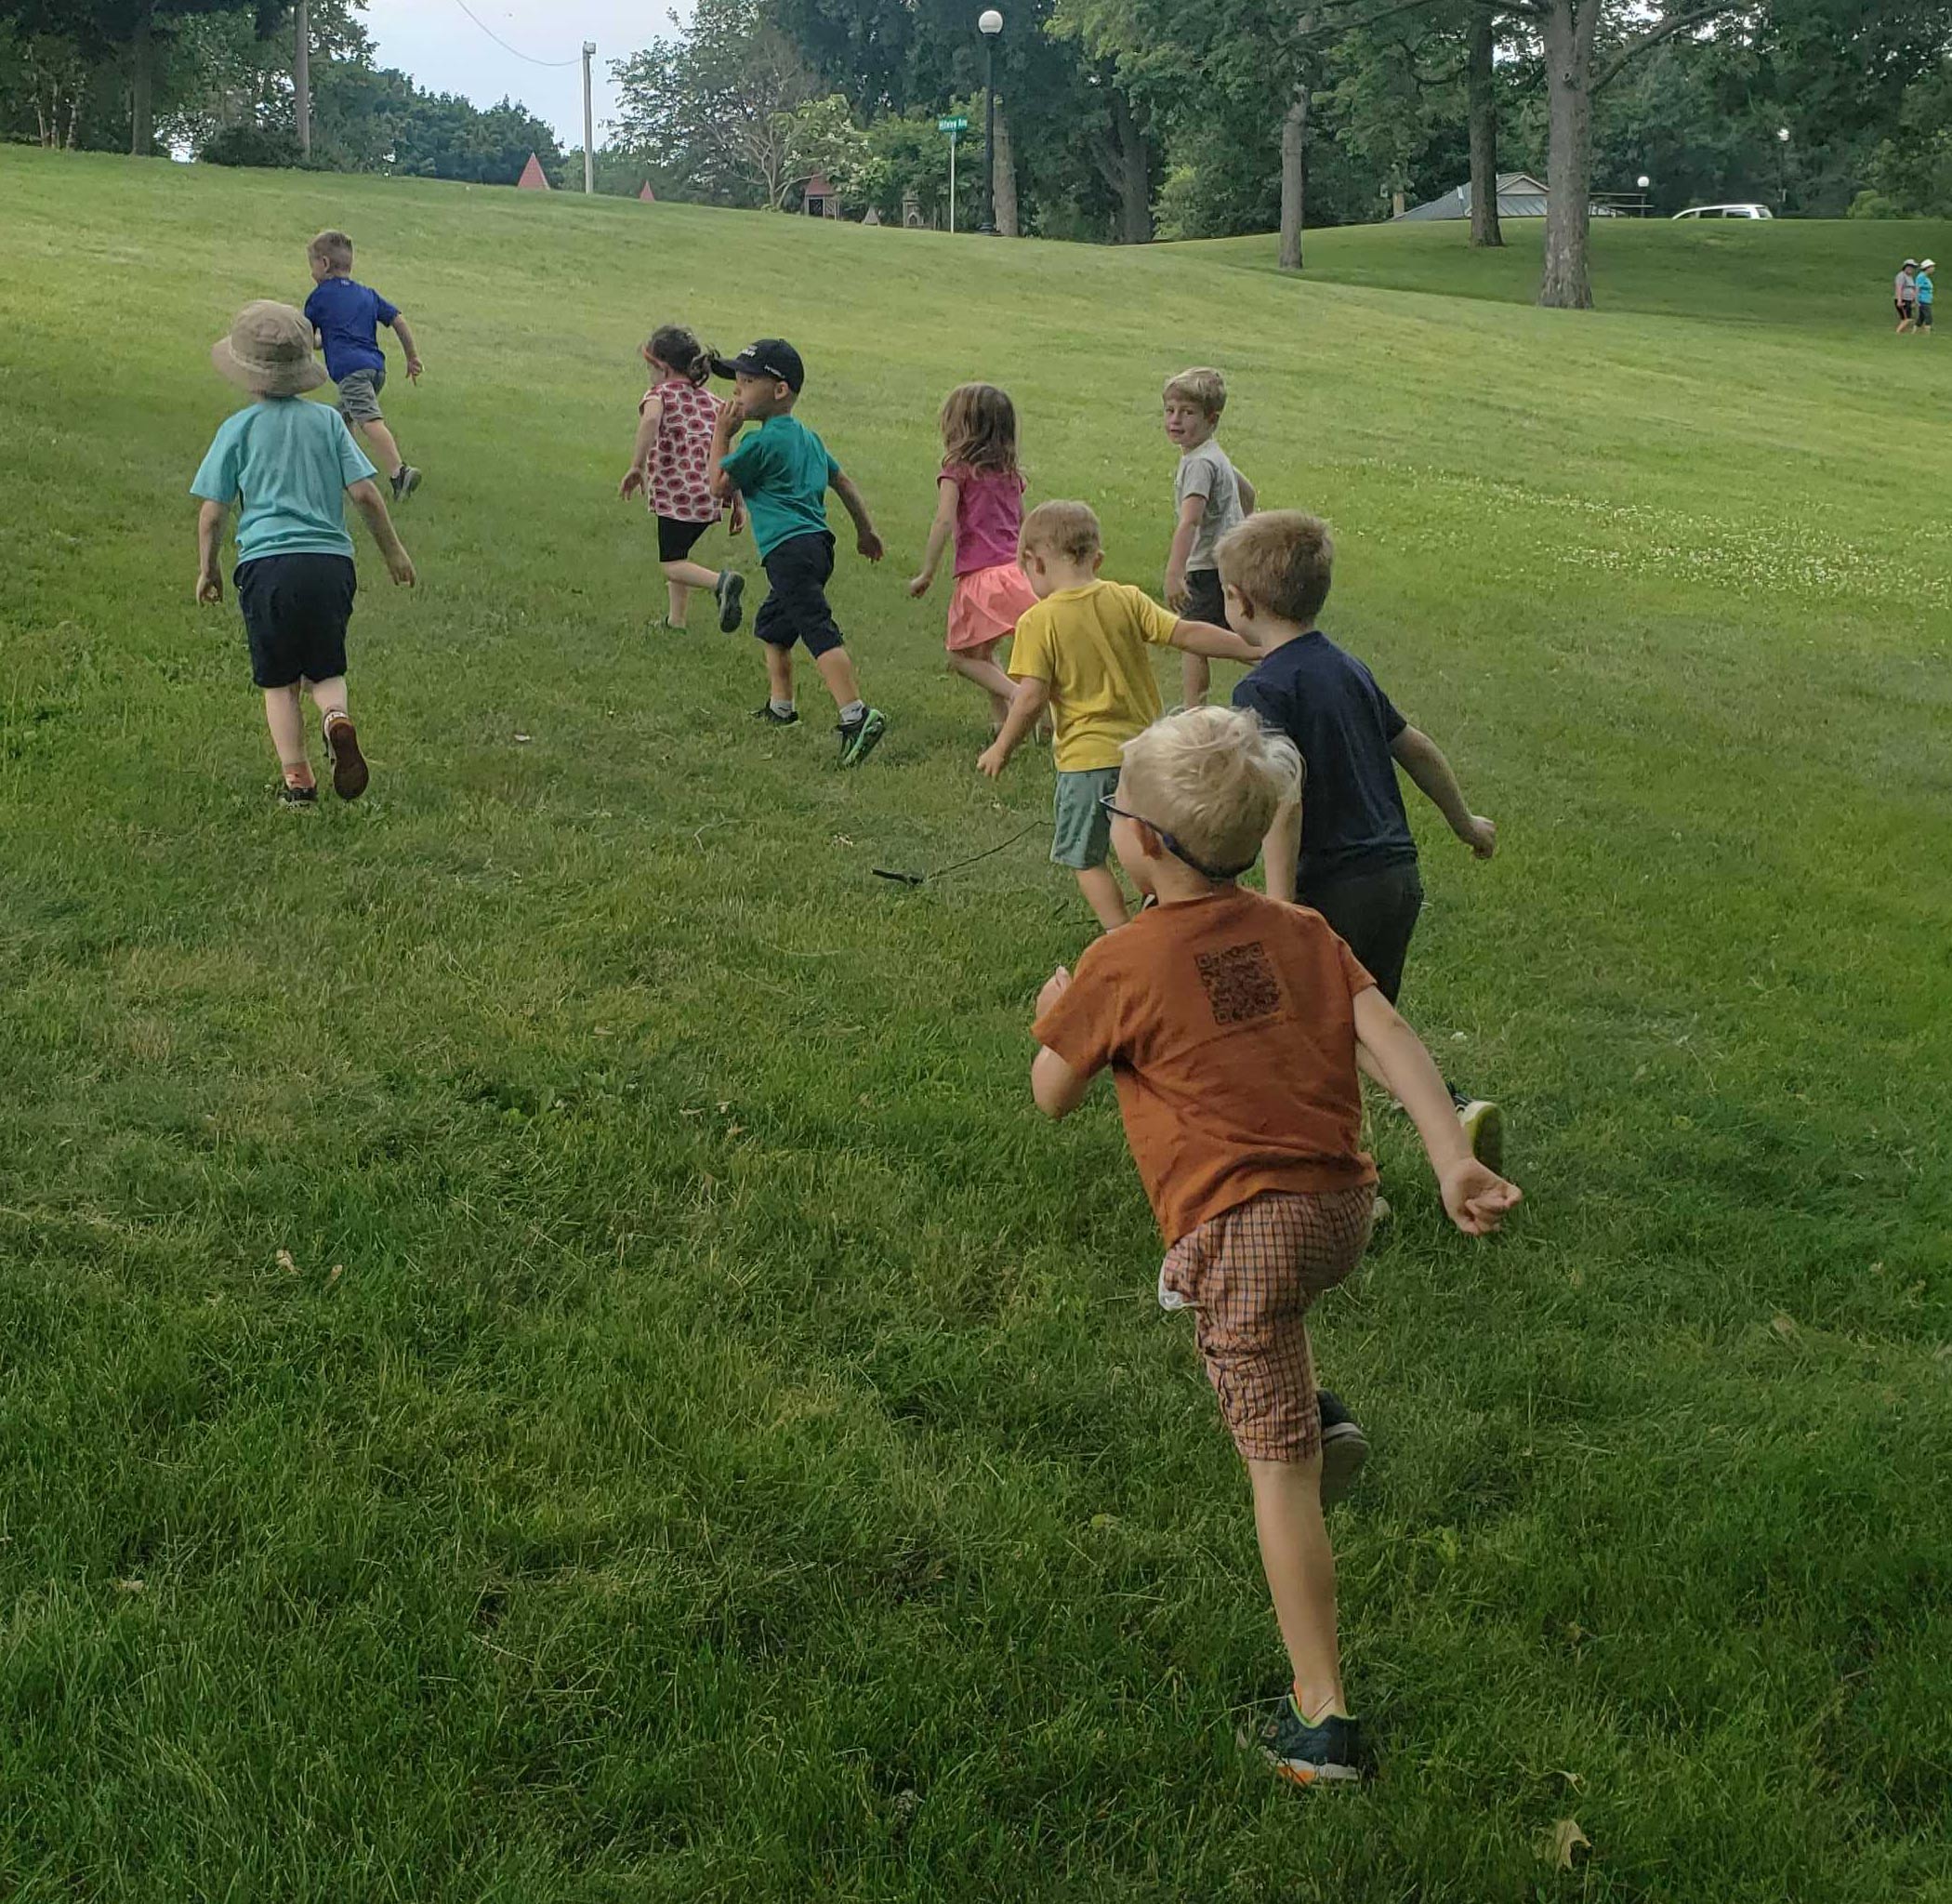 kids running on grass